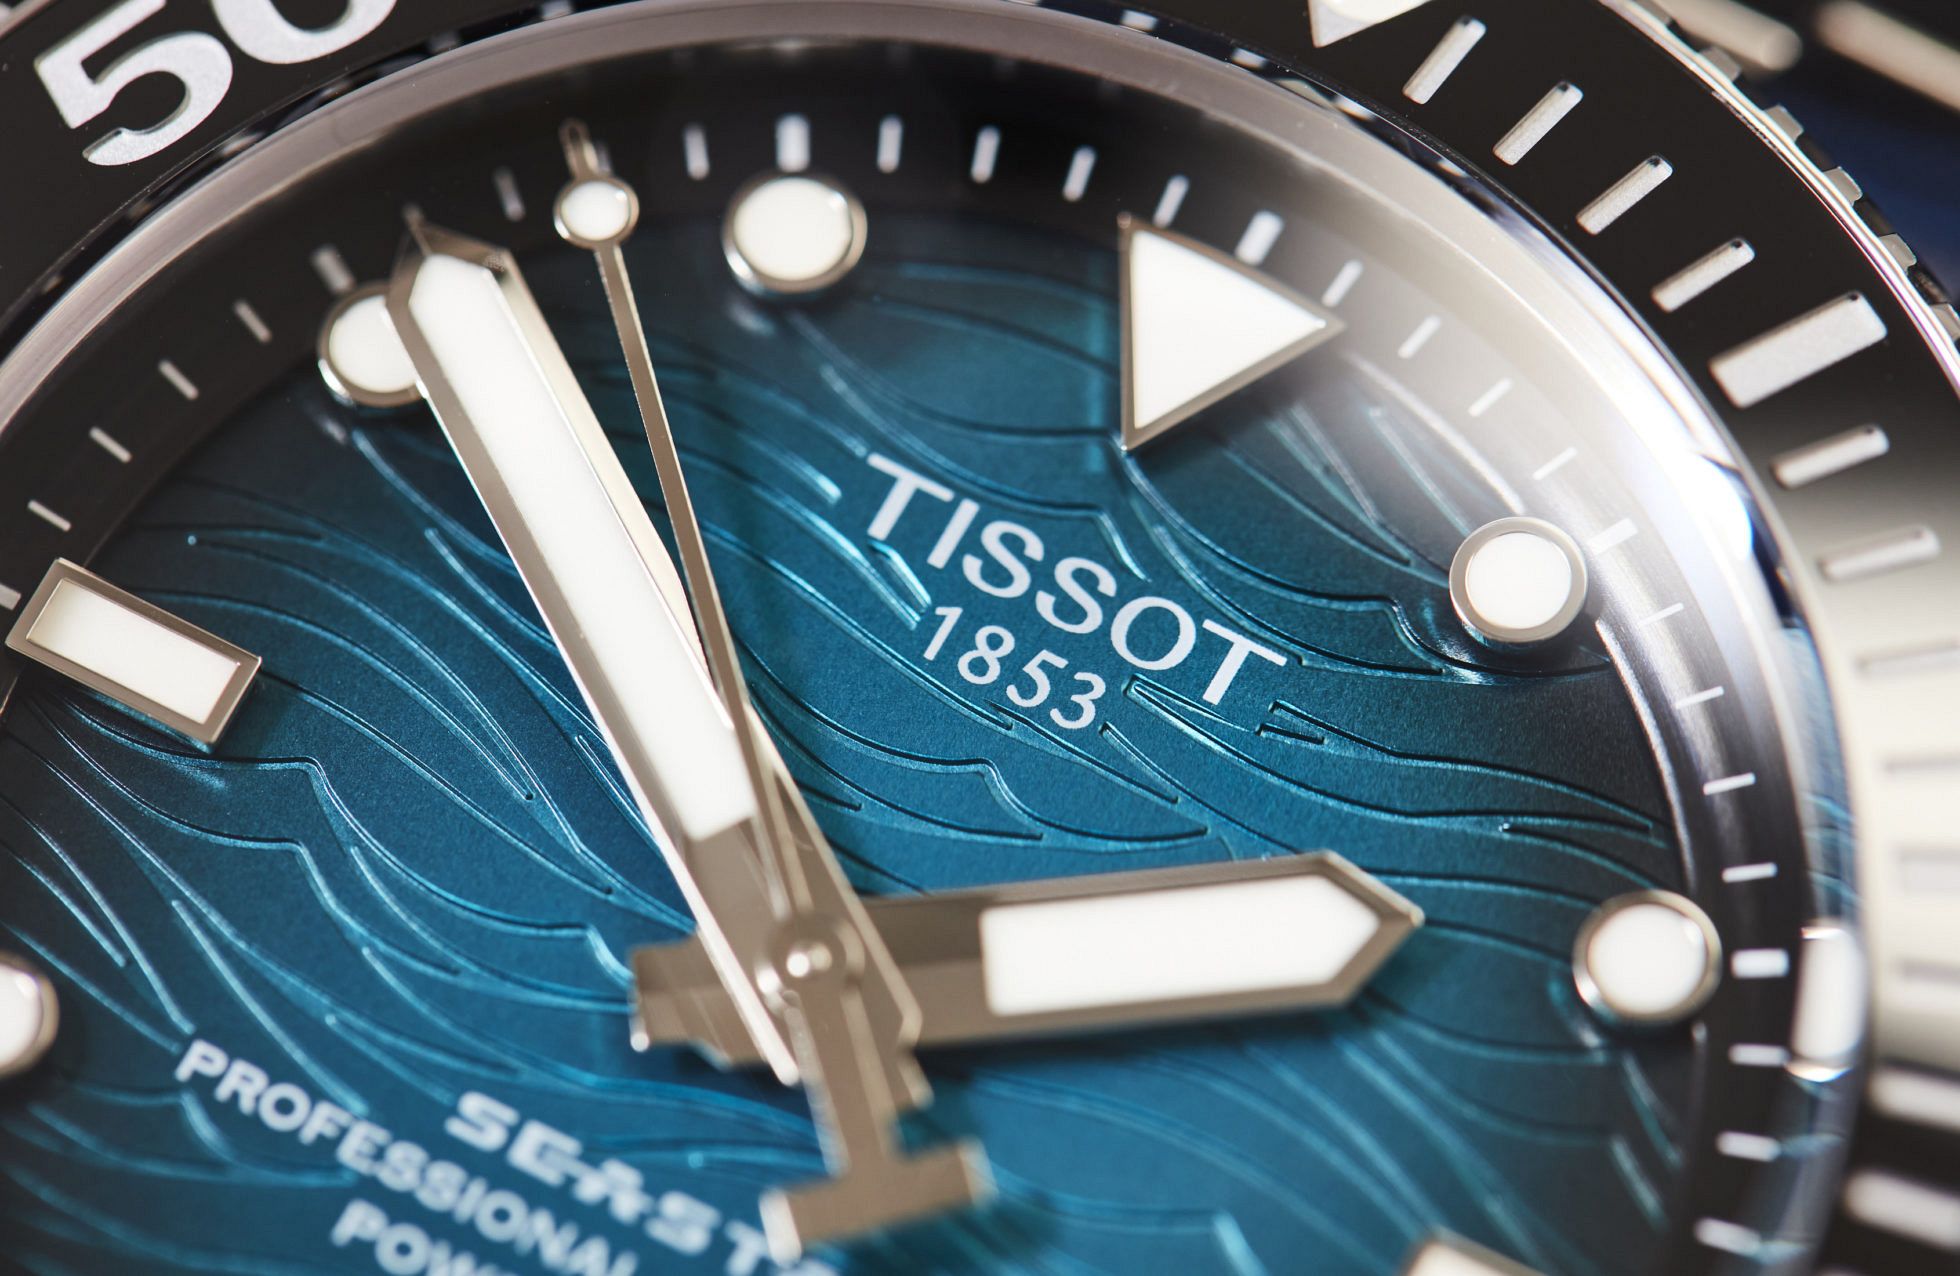 VIDEO: The Tissot Seastar 2000 Professional 